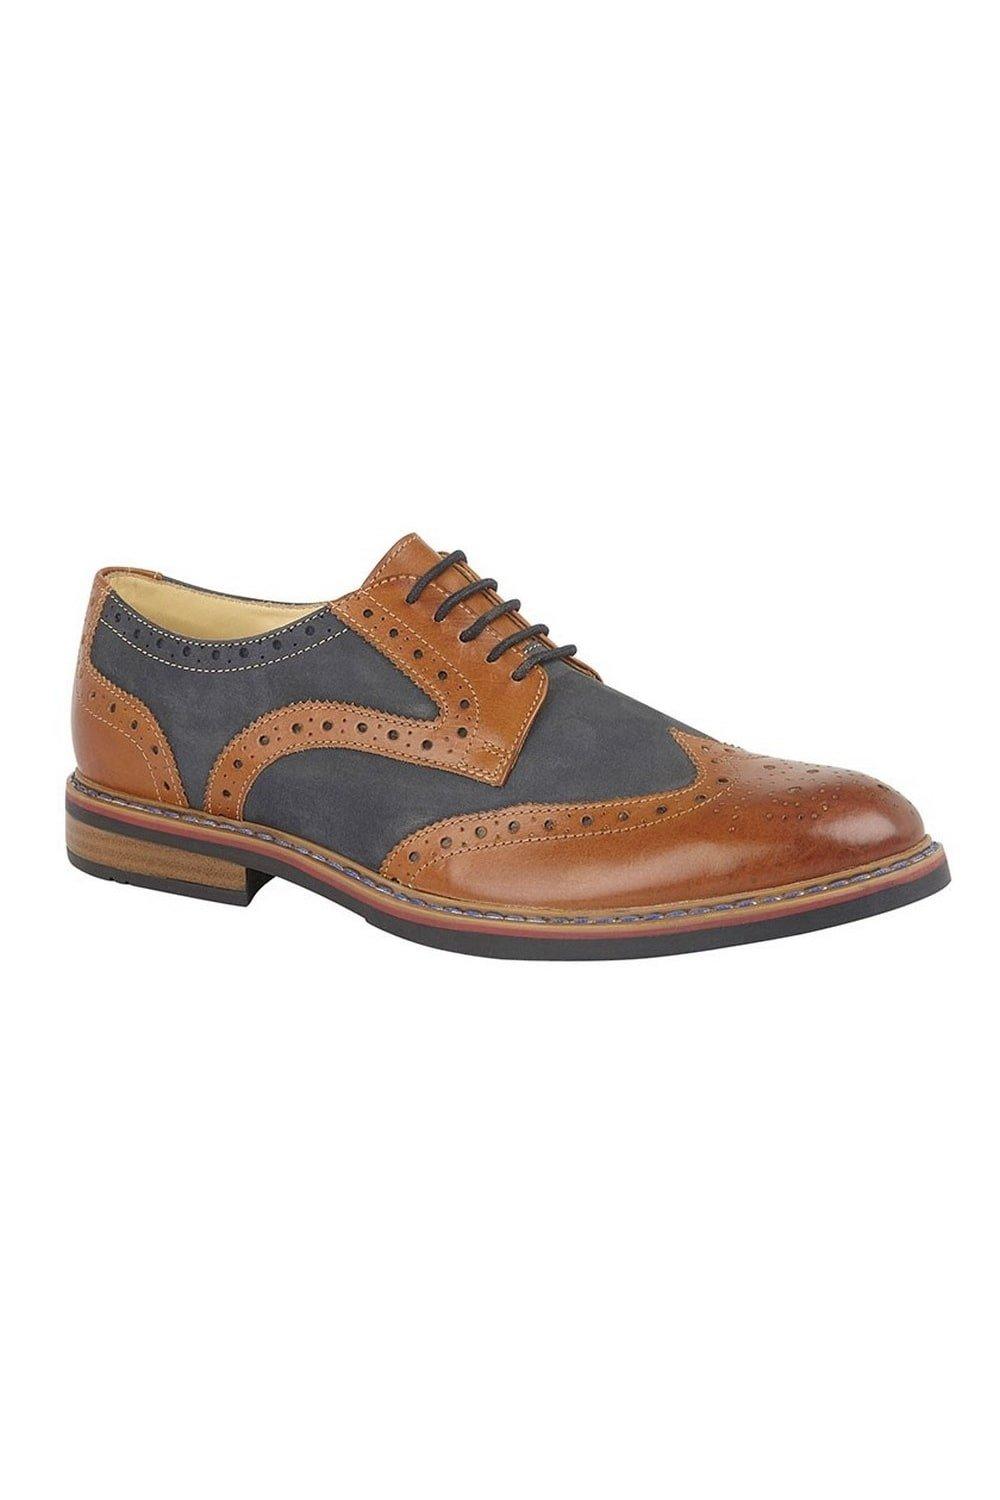 Туфли из нубука со шнуровкой и броговами с глазами Roamers, коричневый мужские кожаные деловые туфли на шнуровке для офиса черный